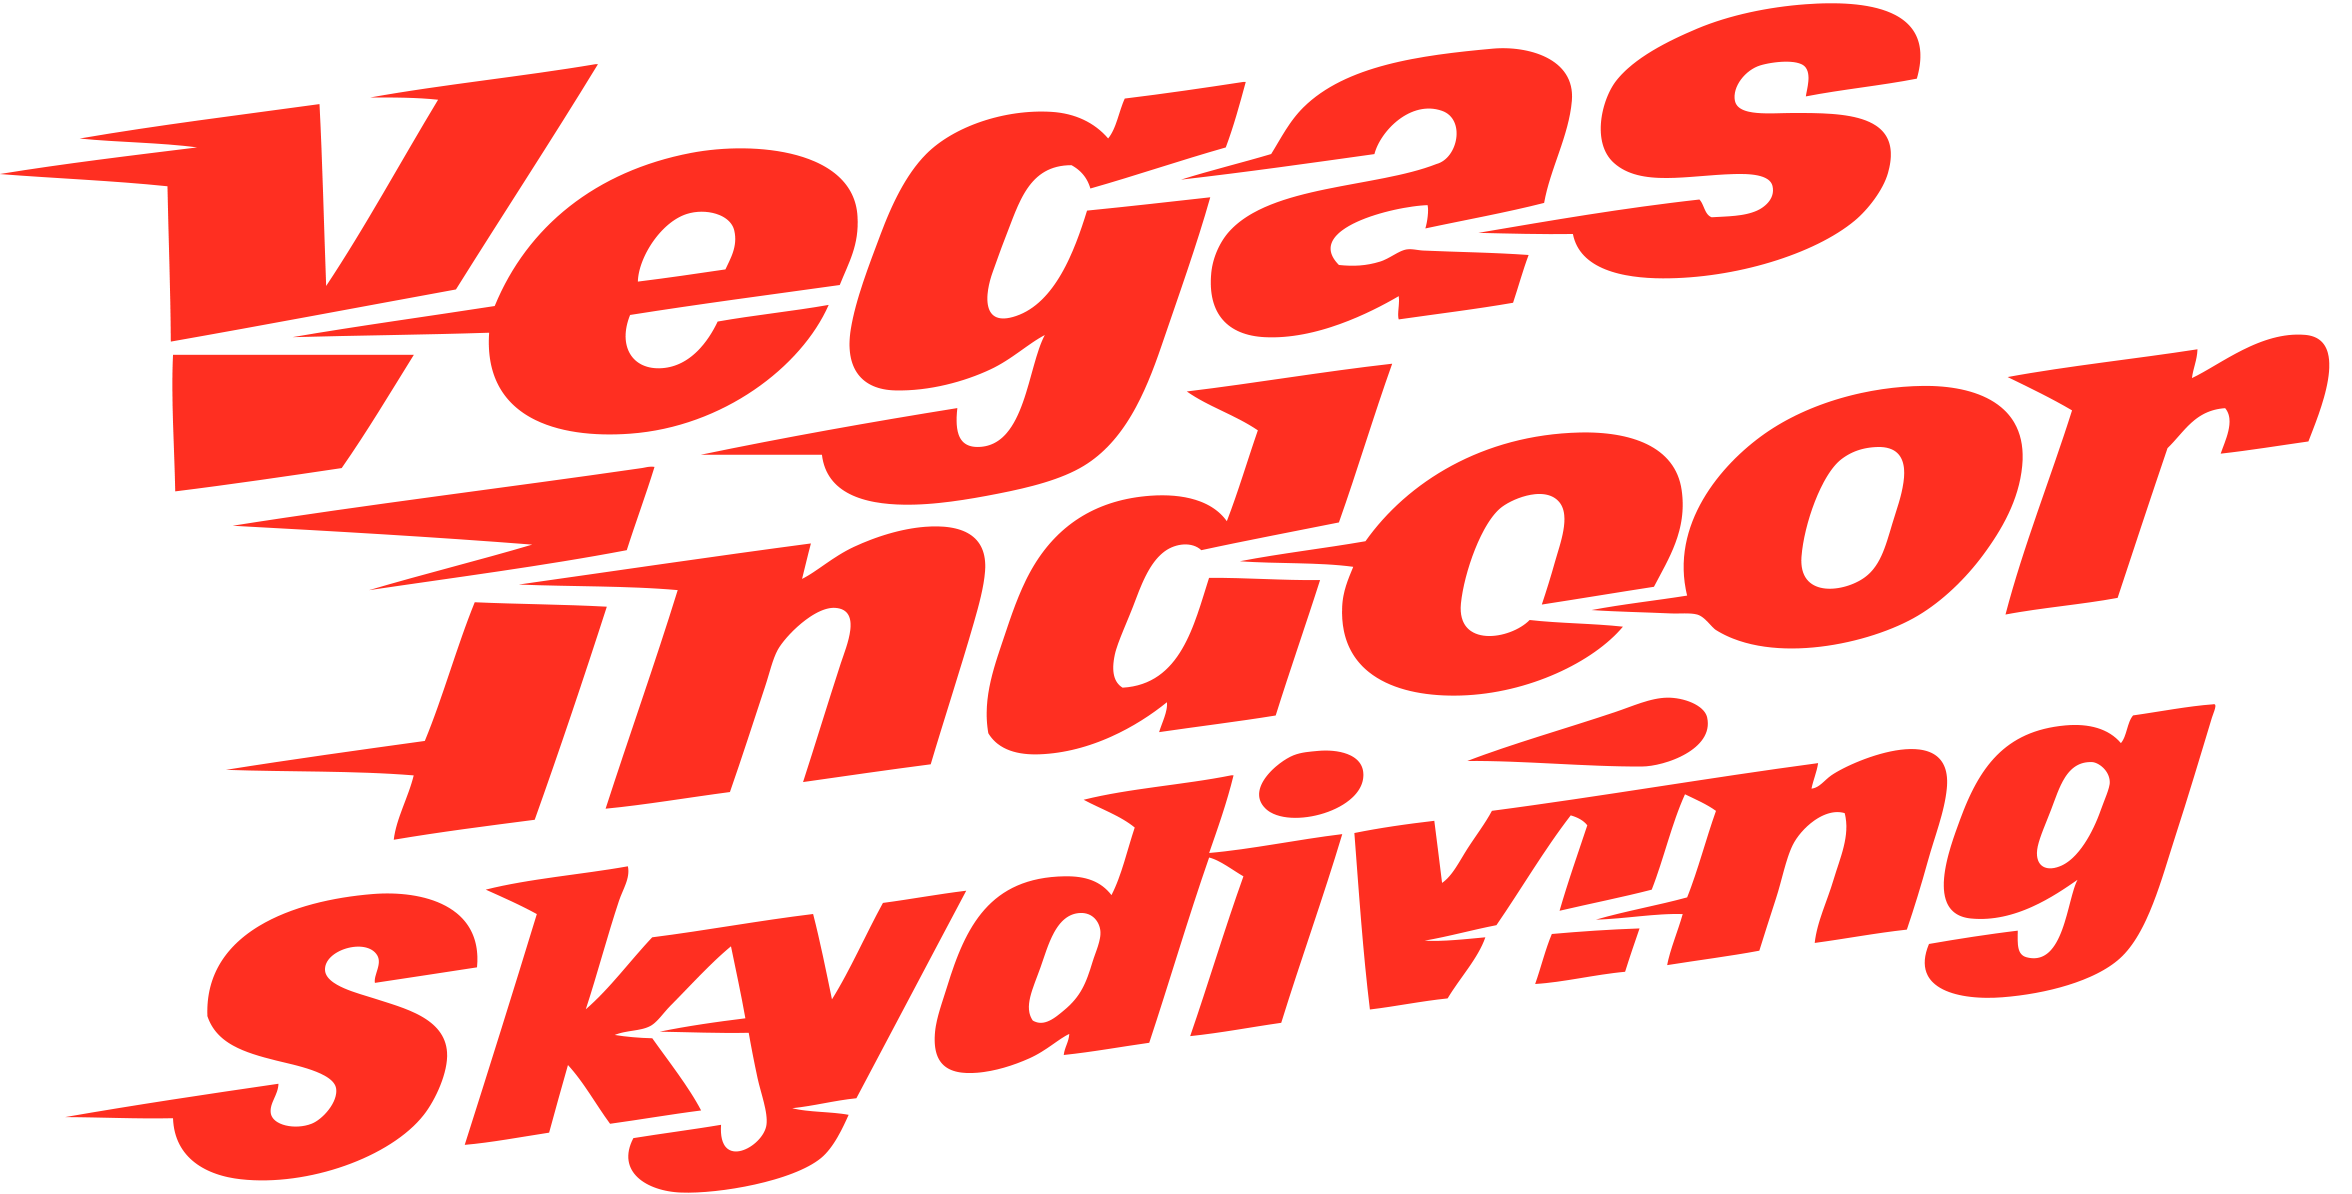 Vegas.com Logo - Vegas Indoor Skydiving. Indoor Skydiving in Las Vegas, Nevada